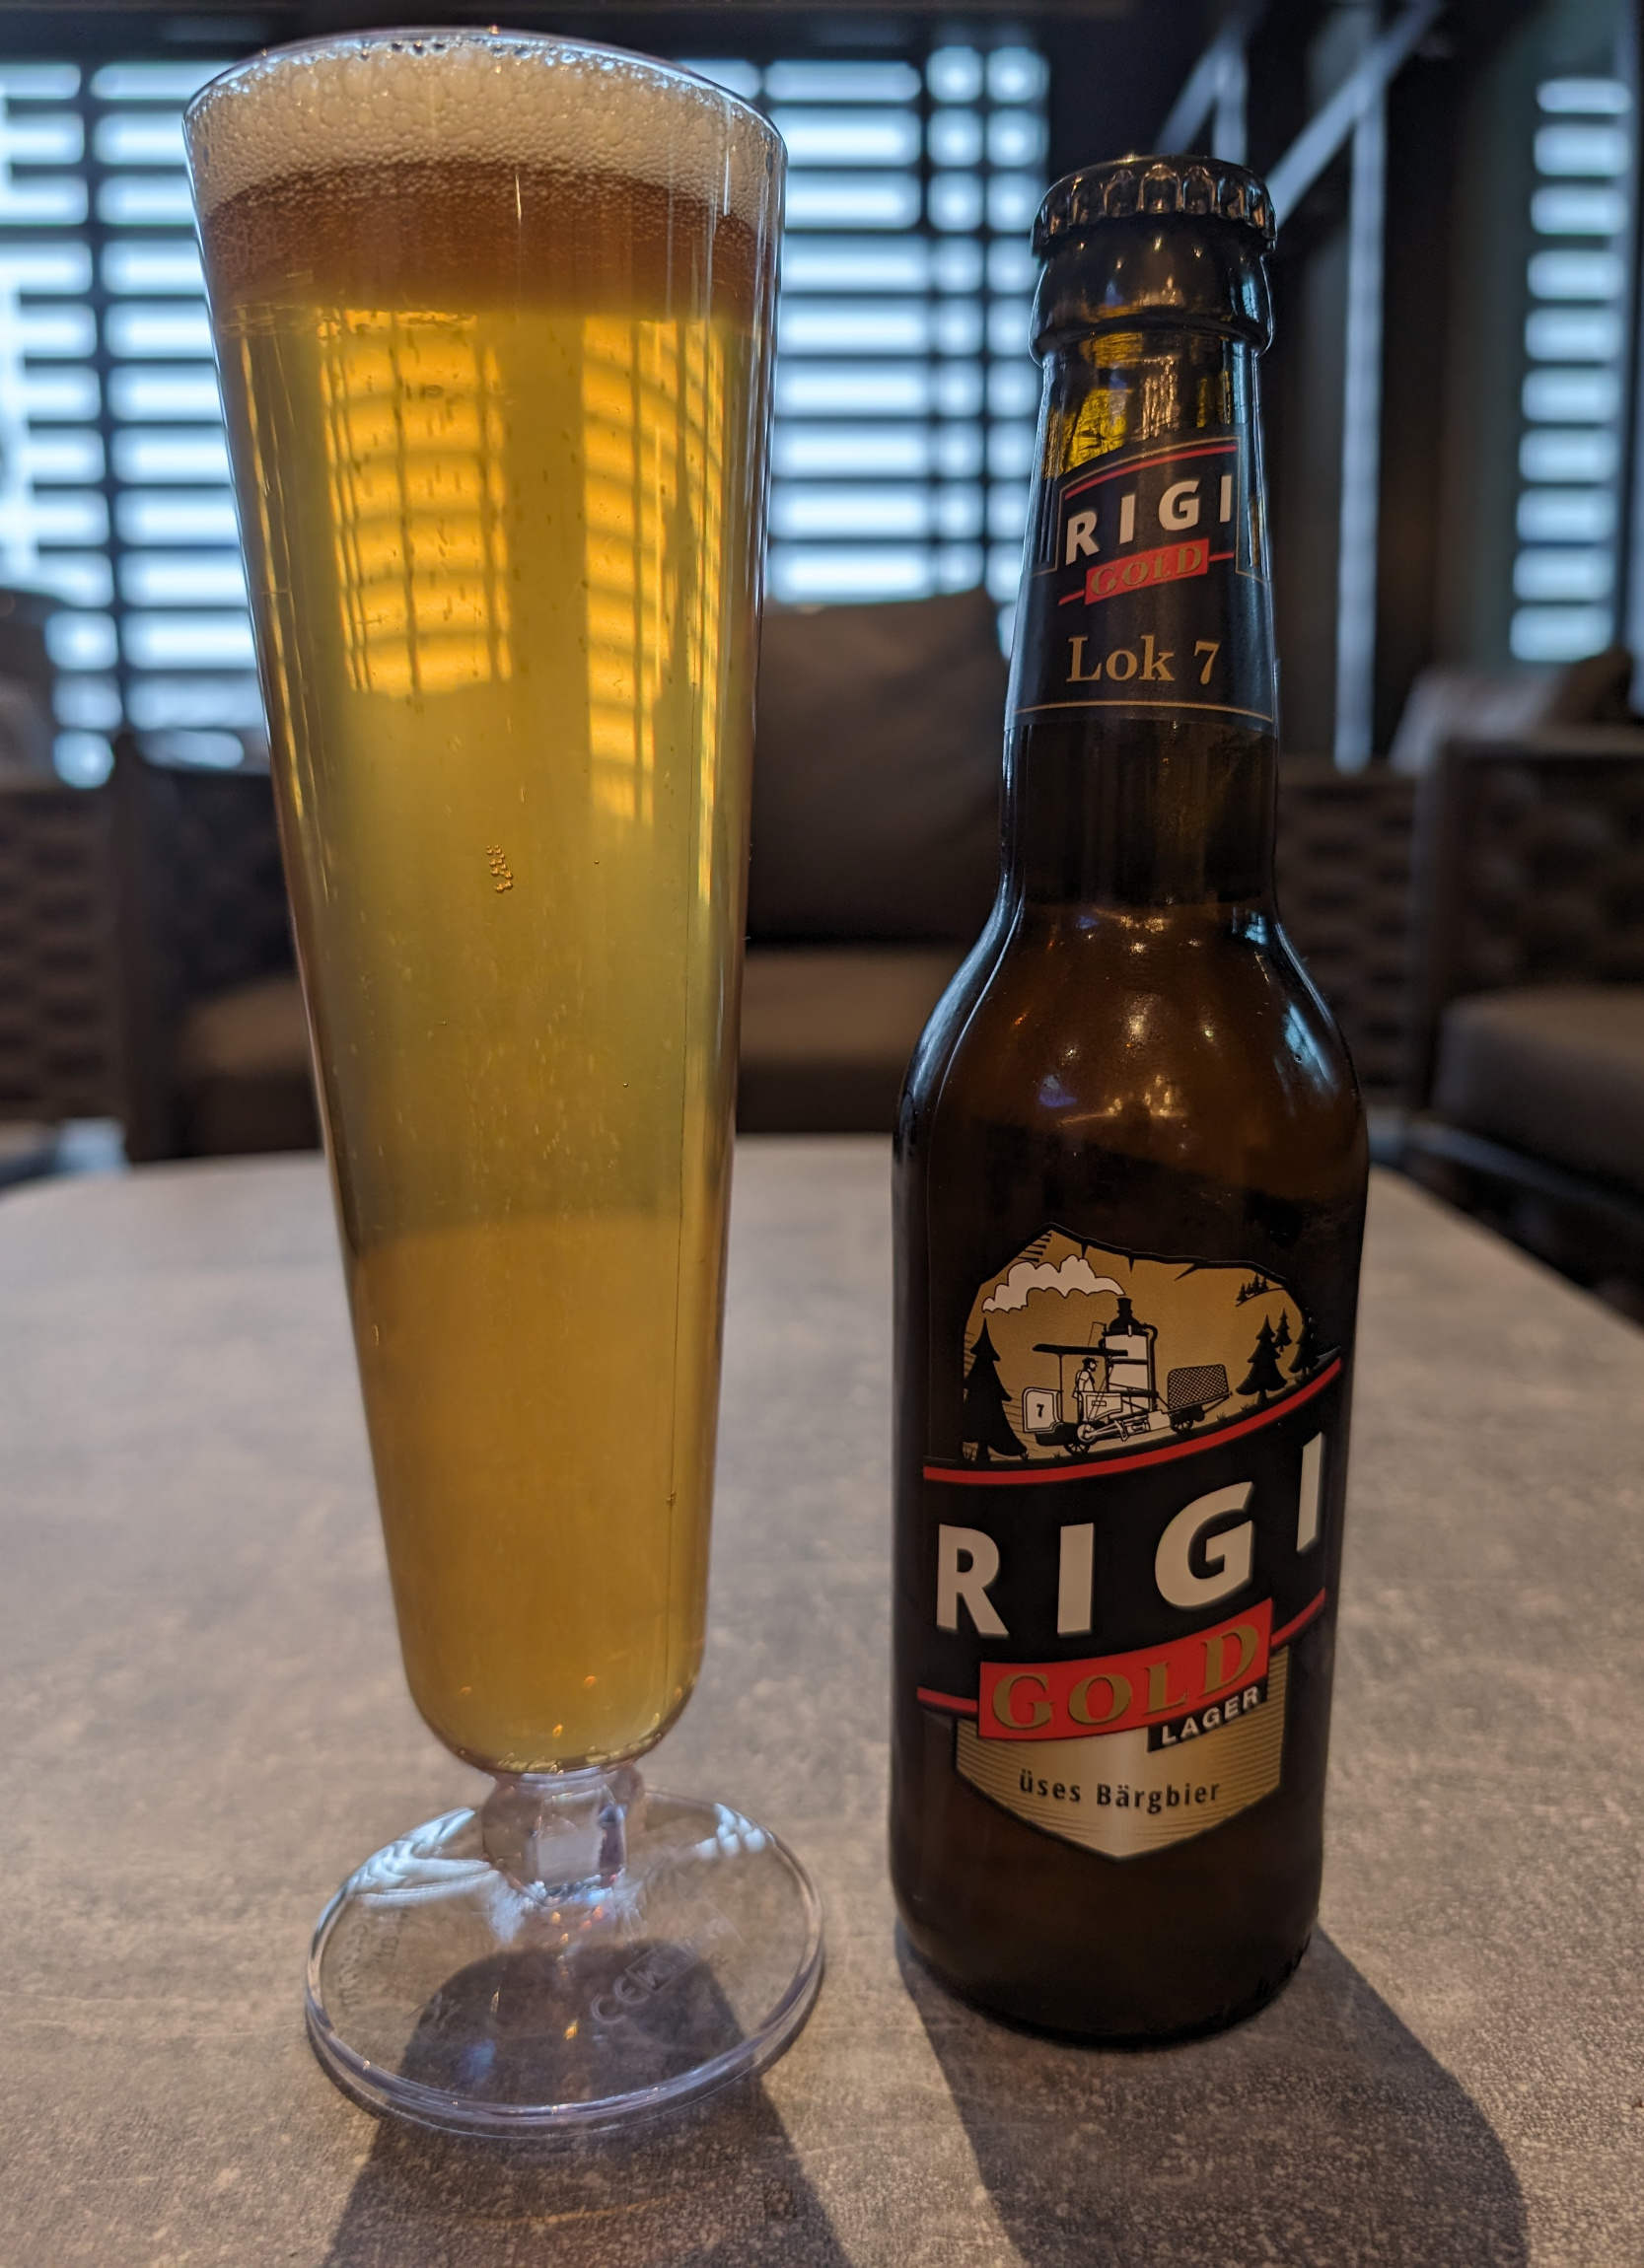 Rigi beer